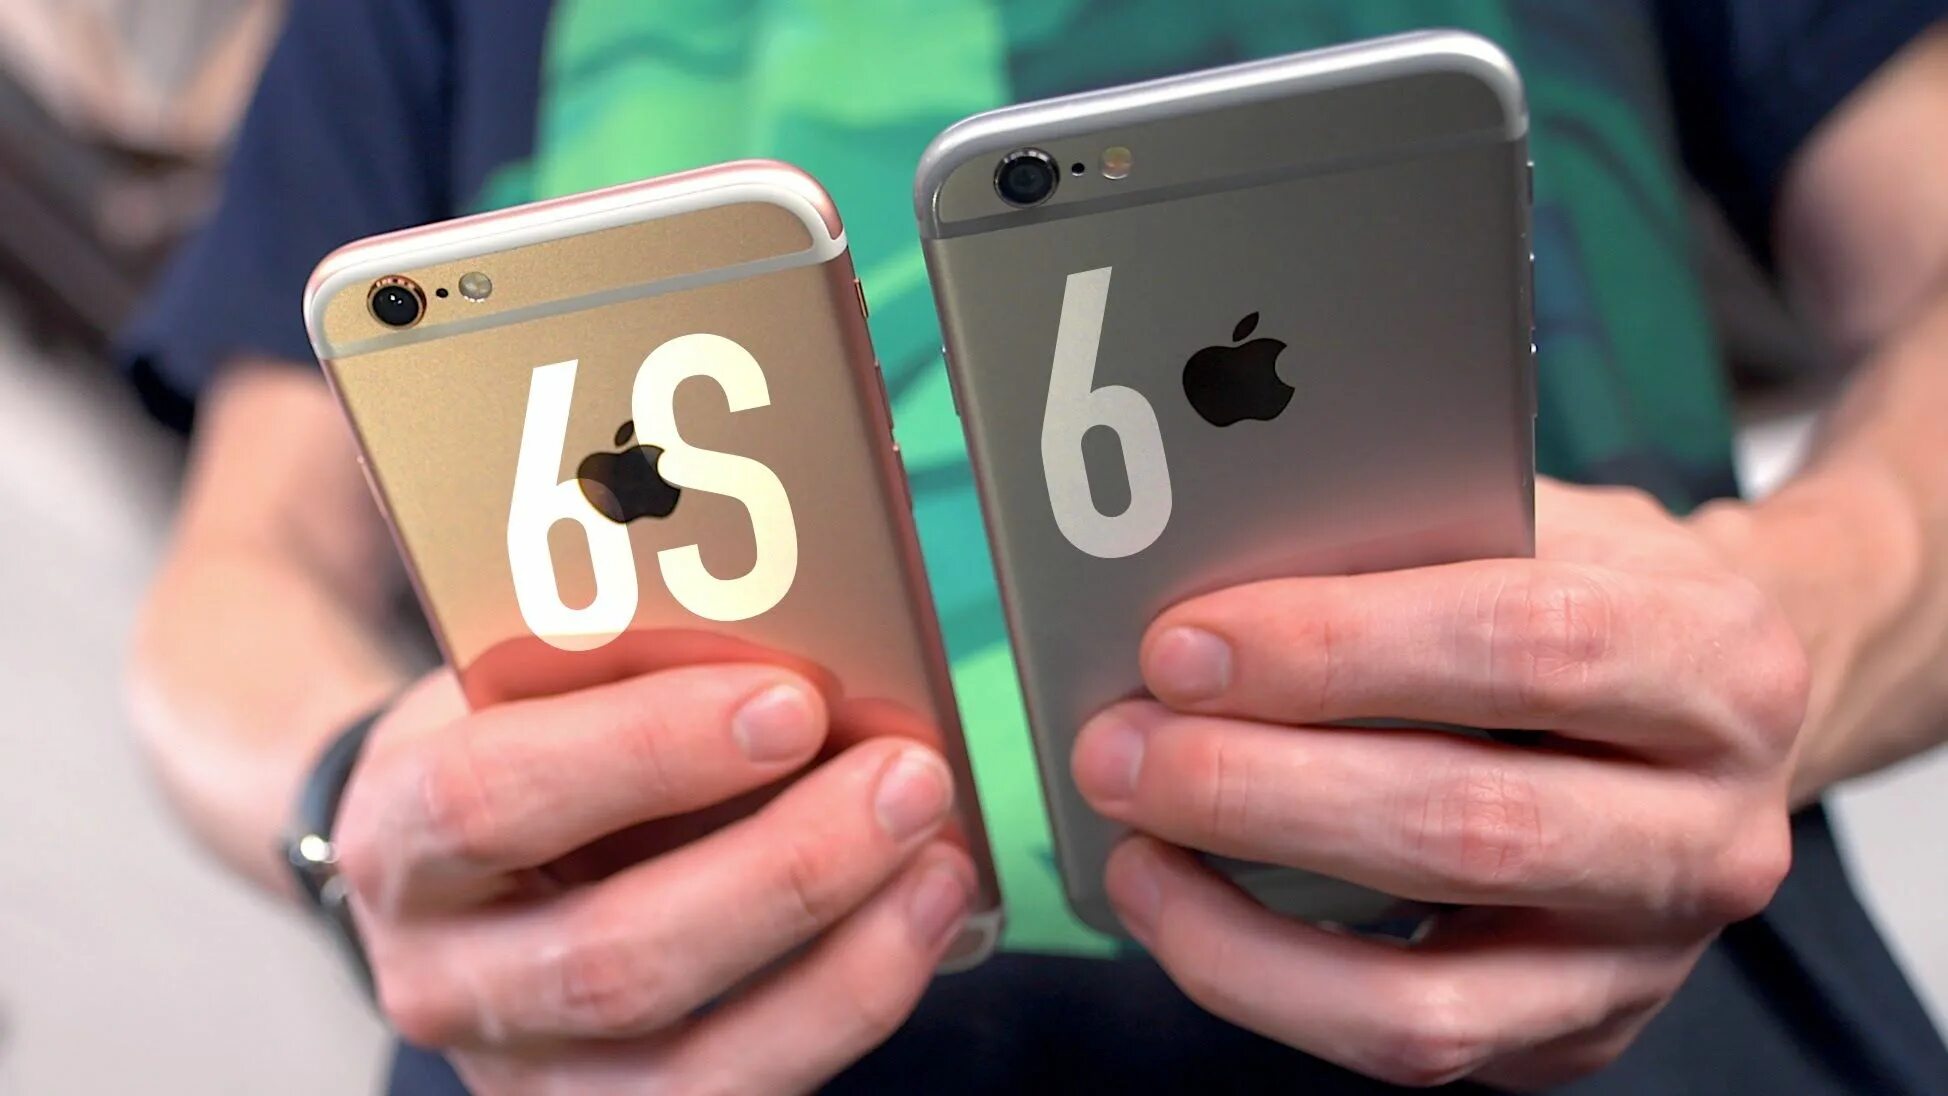 Айфон 6 ютуб. Iphone 6 vs 6s. Iphone 6s vs iphone 6. Апгрейд айфона. Iphone 6 vs 6s отличия внешне.